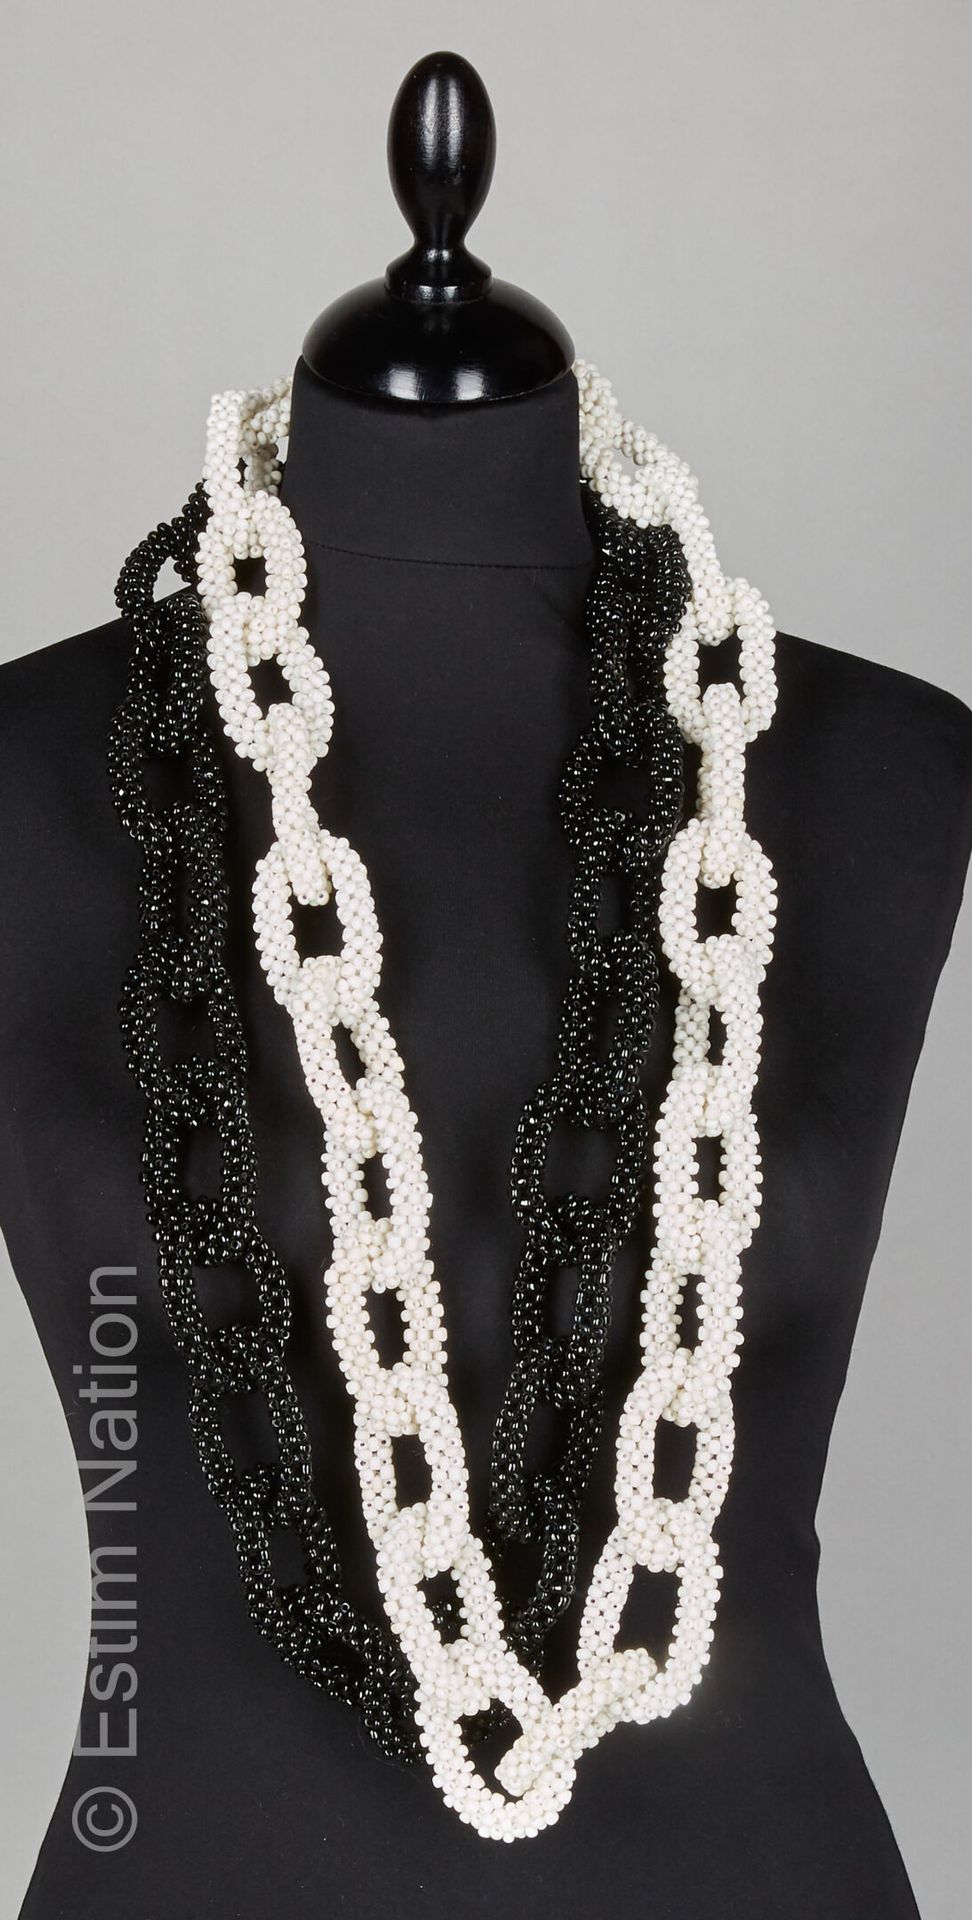 APPARTEMENT à LOUER DEUX SAUTOIRS composés de perles en verre noires et blanches&hellip;